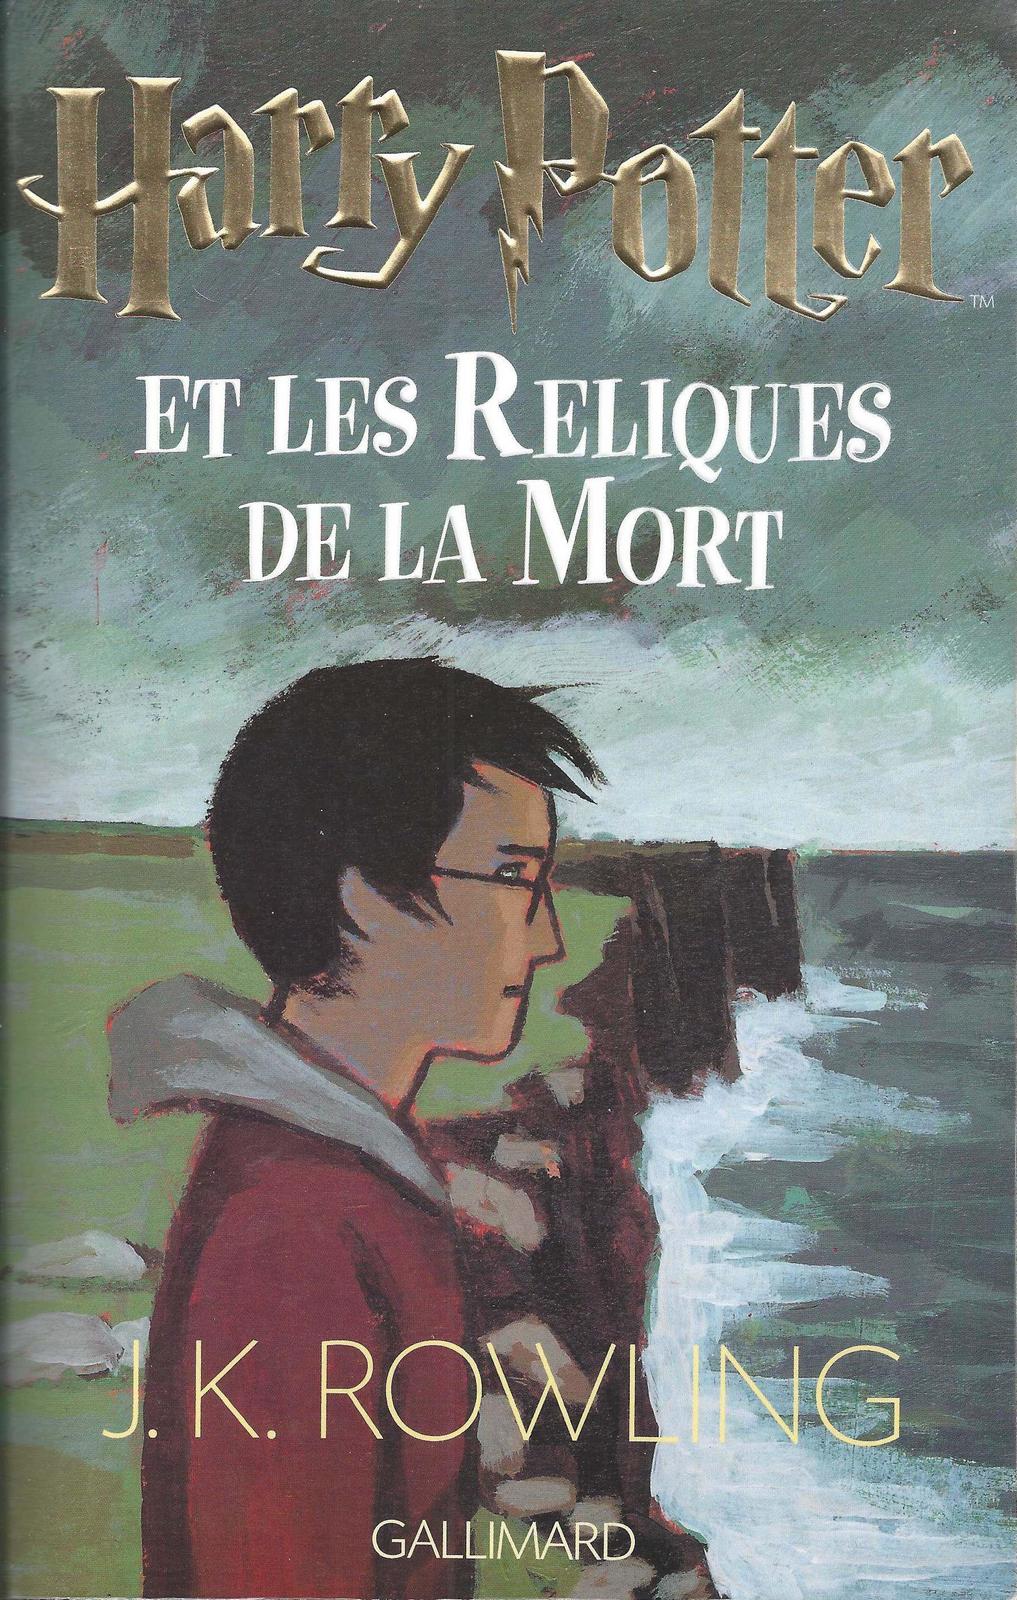 J. K. Rowling: Harry Potter et les reliques de la mort (French language, 2007, Gallimard Jeunesse)